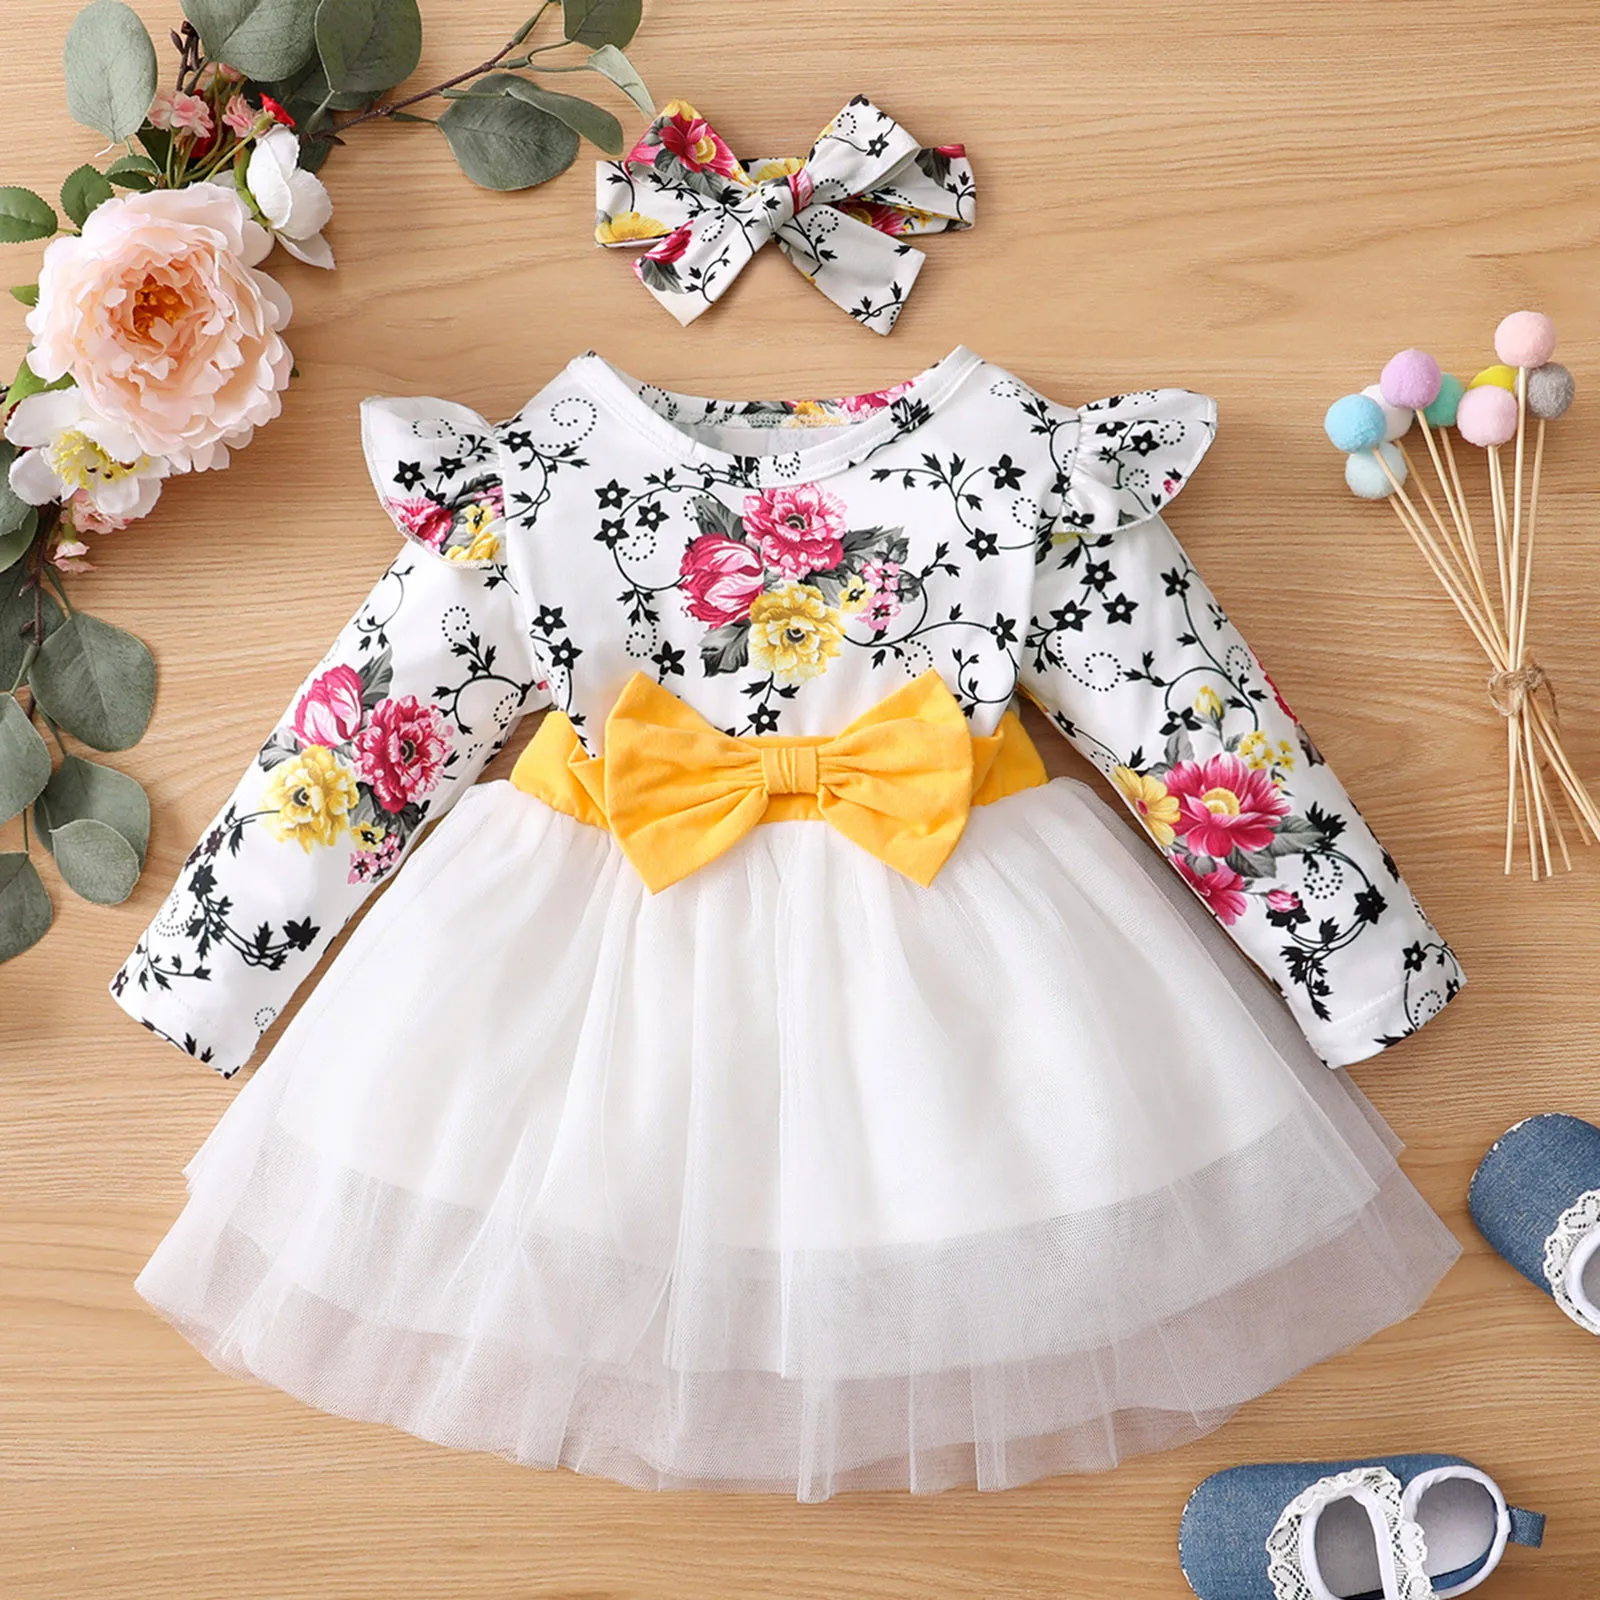 Siyova Vestido de manga larga para niña recién nacido niña estampado de flores cinta para la frente minivestido vestido de princesa vestido floral bebé vestido para niña 